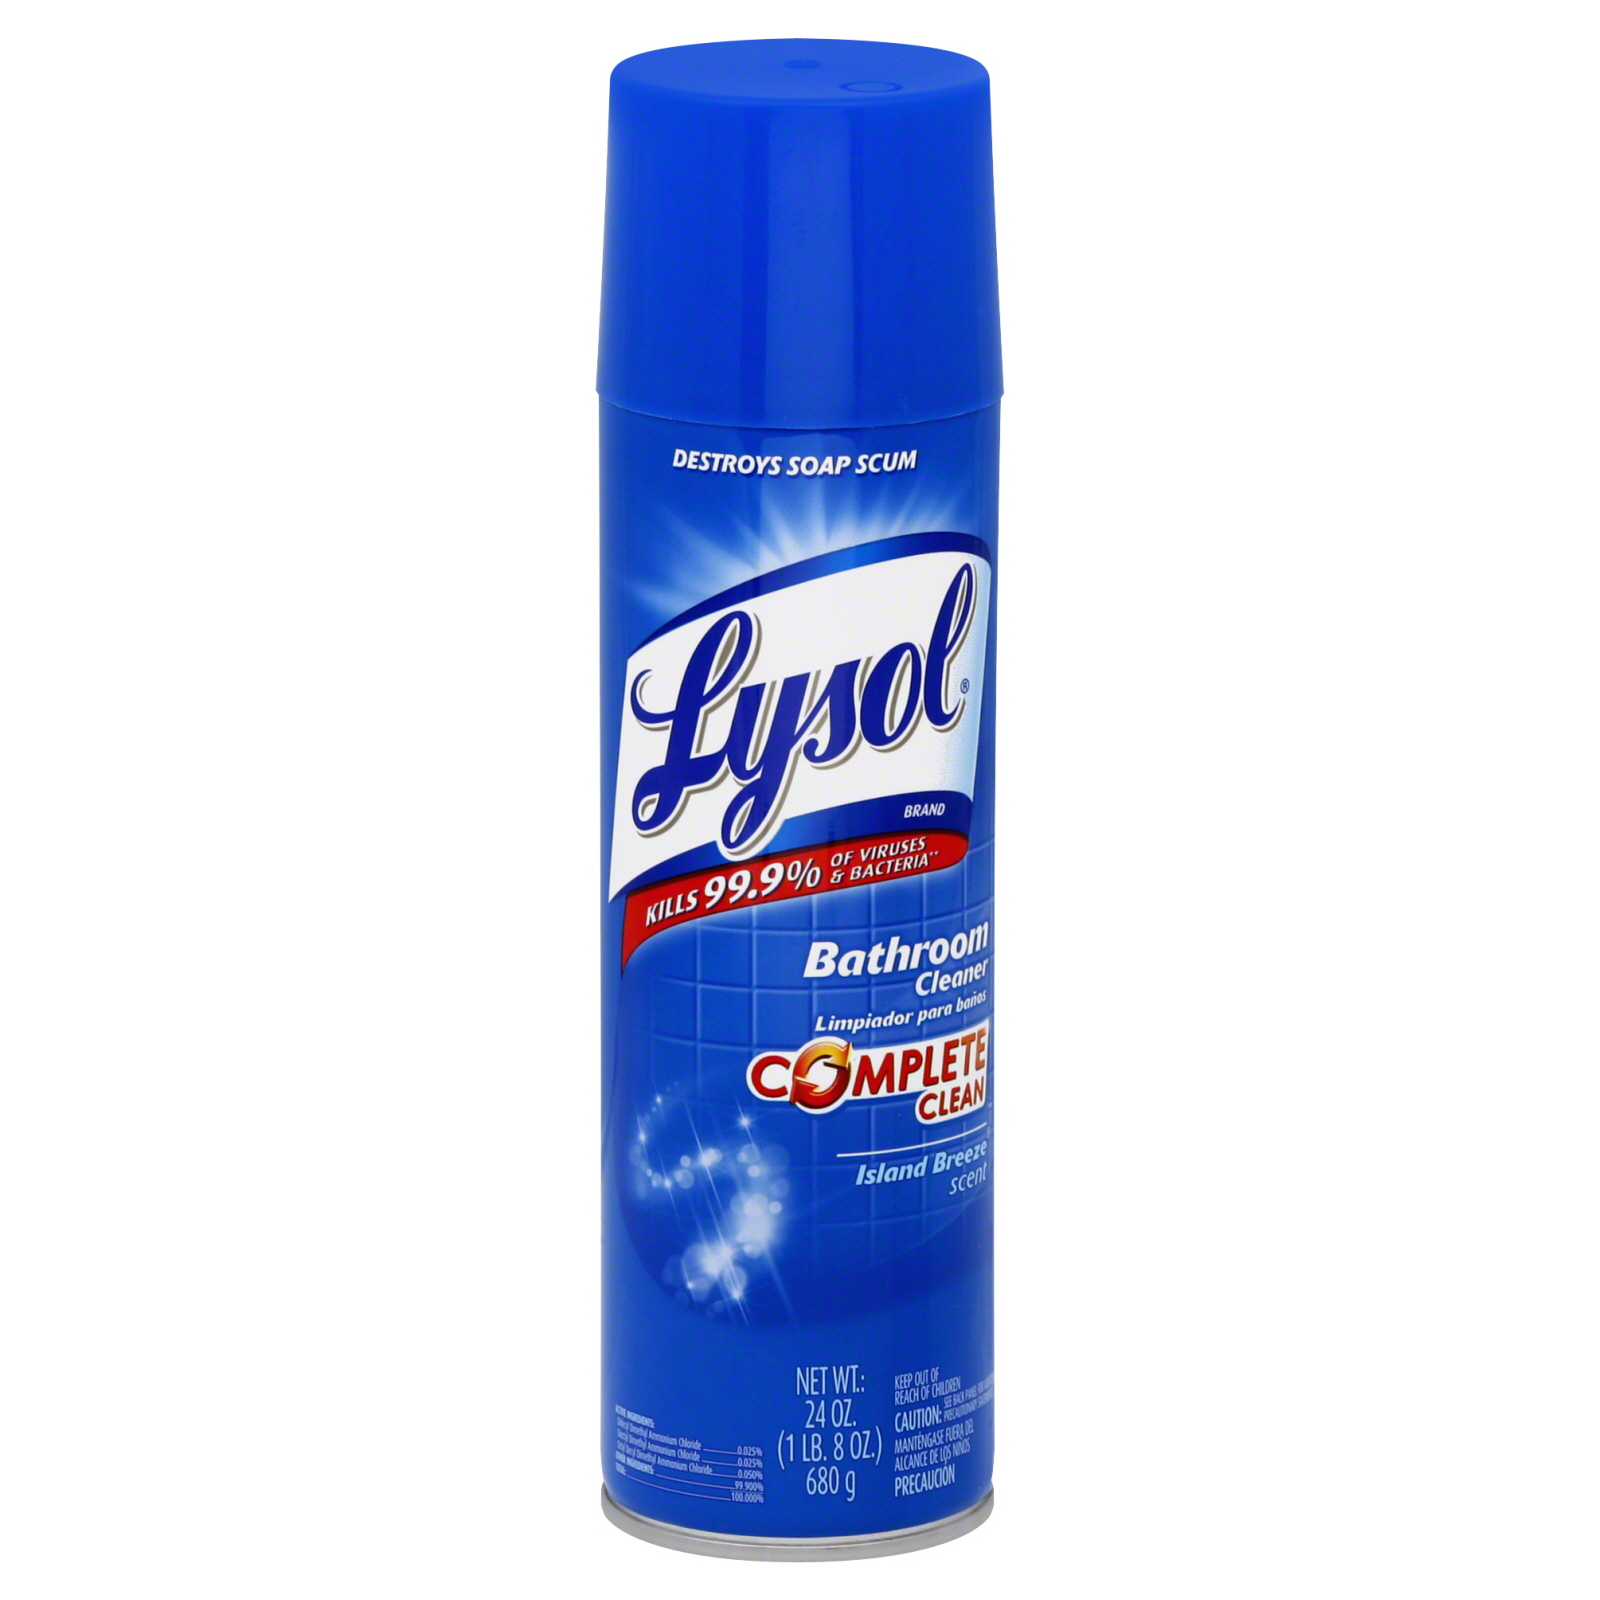 Lysol Bathroom Cleaner, Island Breeze Scent, 24 oz (1 lb 8 oz) 680 g